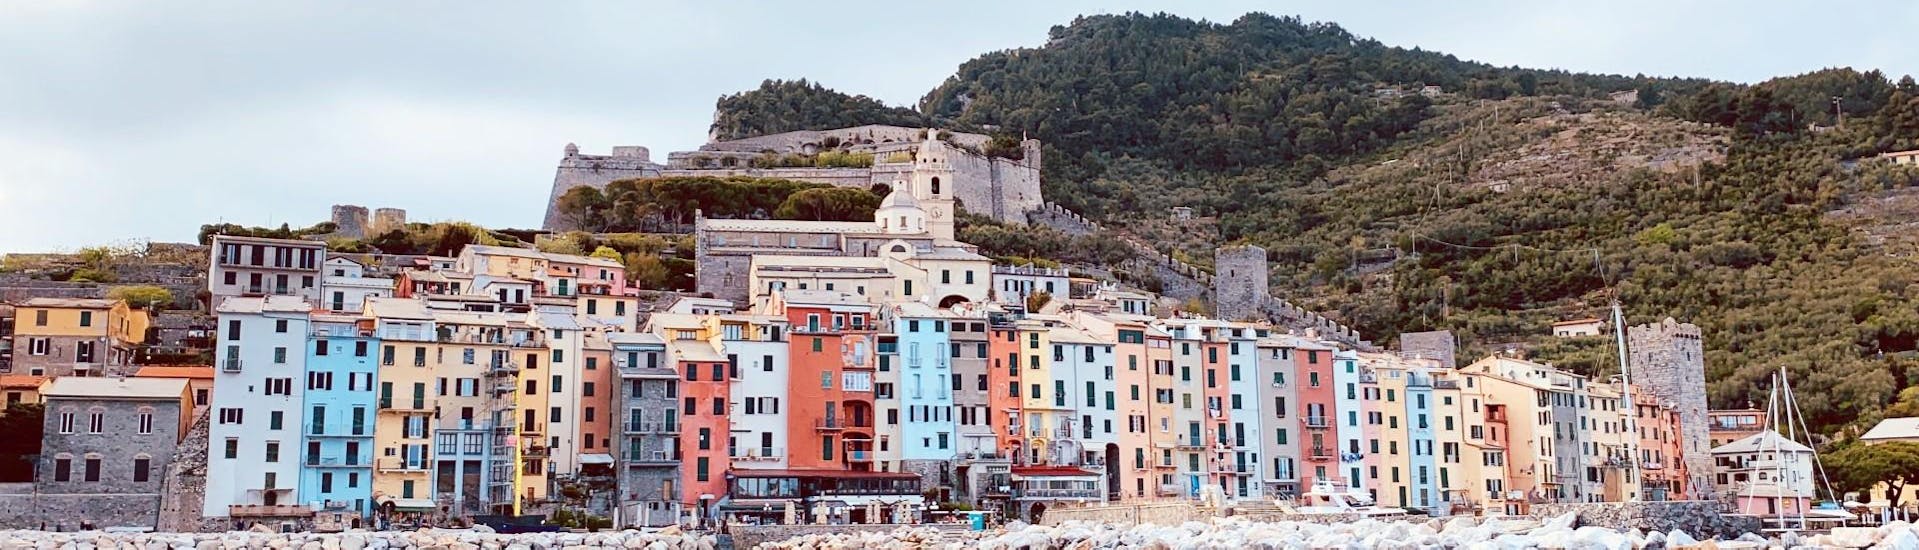 La colorida vista de Porto Venere durante el viaje en barco privado de un día completo a Cinque Terre y Golfo dei Poeti con Fish & Chill Cinque Terre Tour.